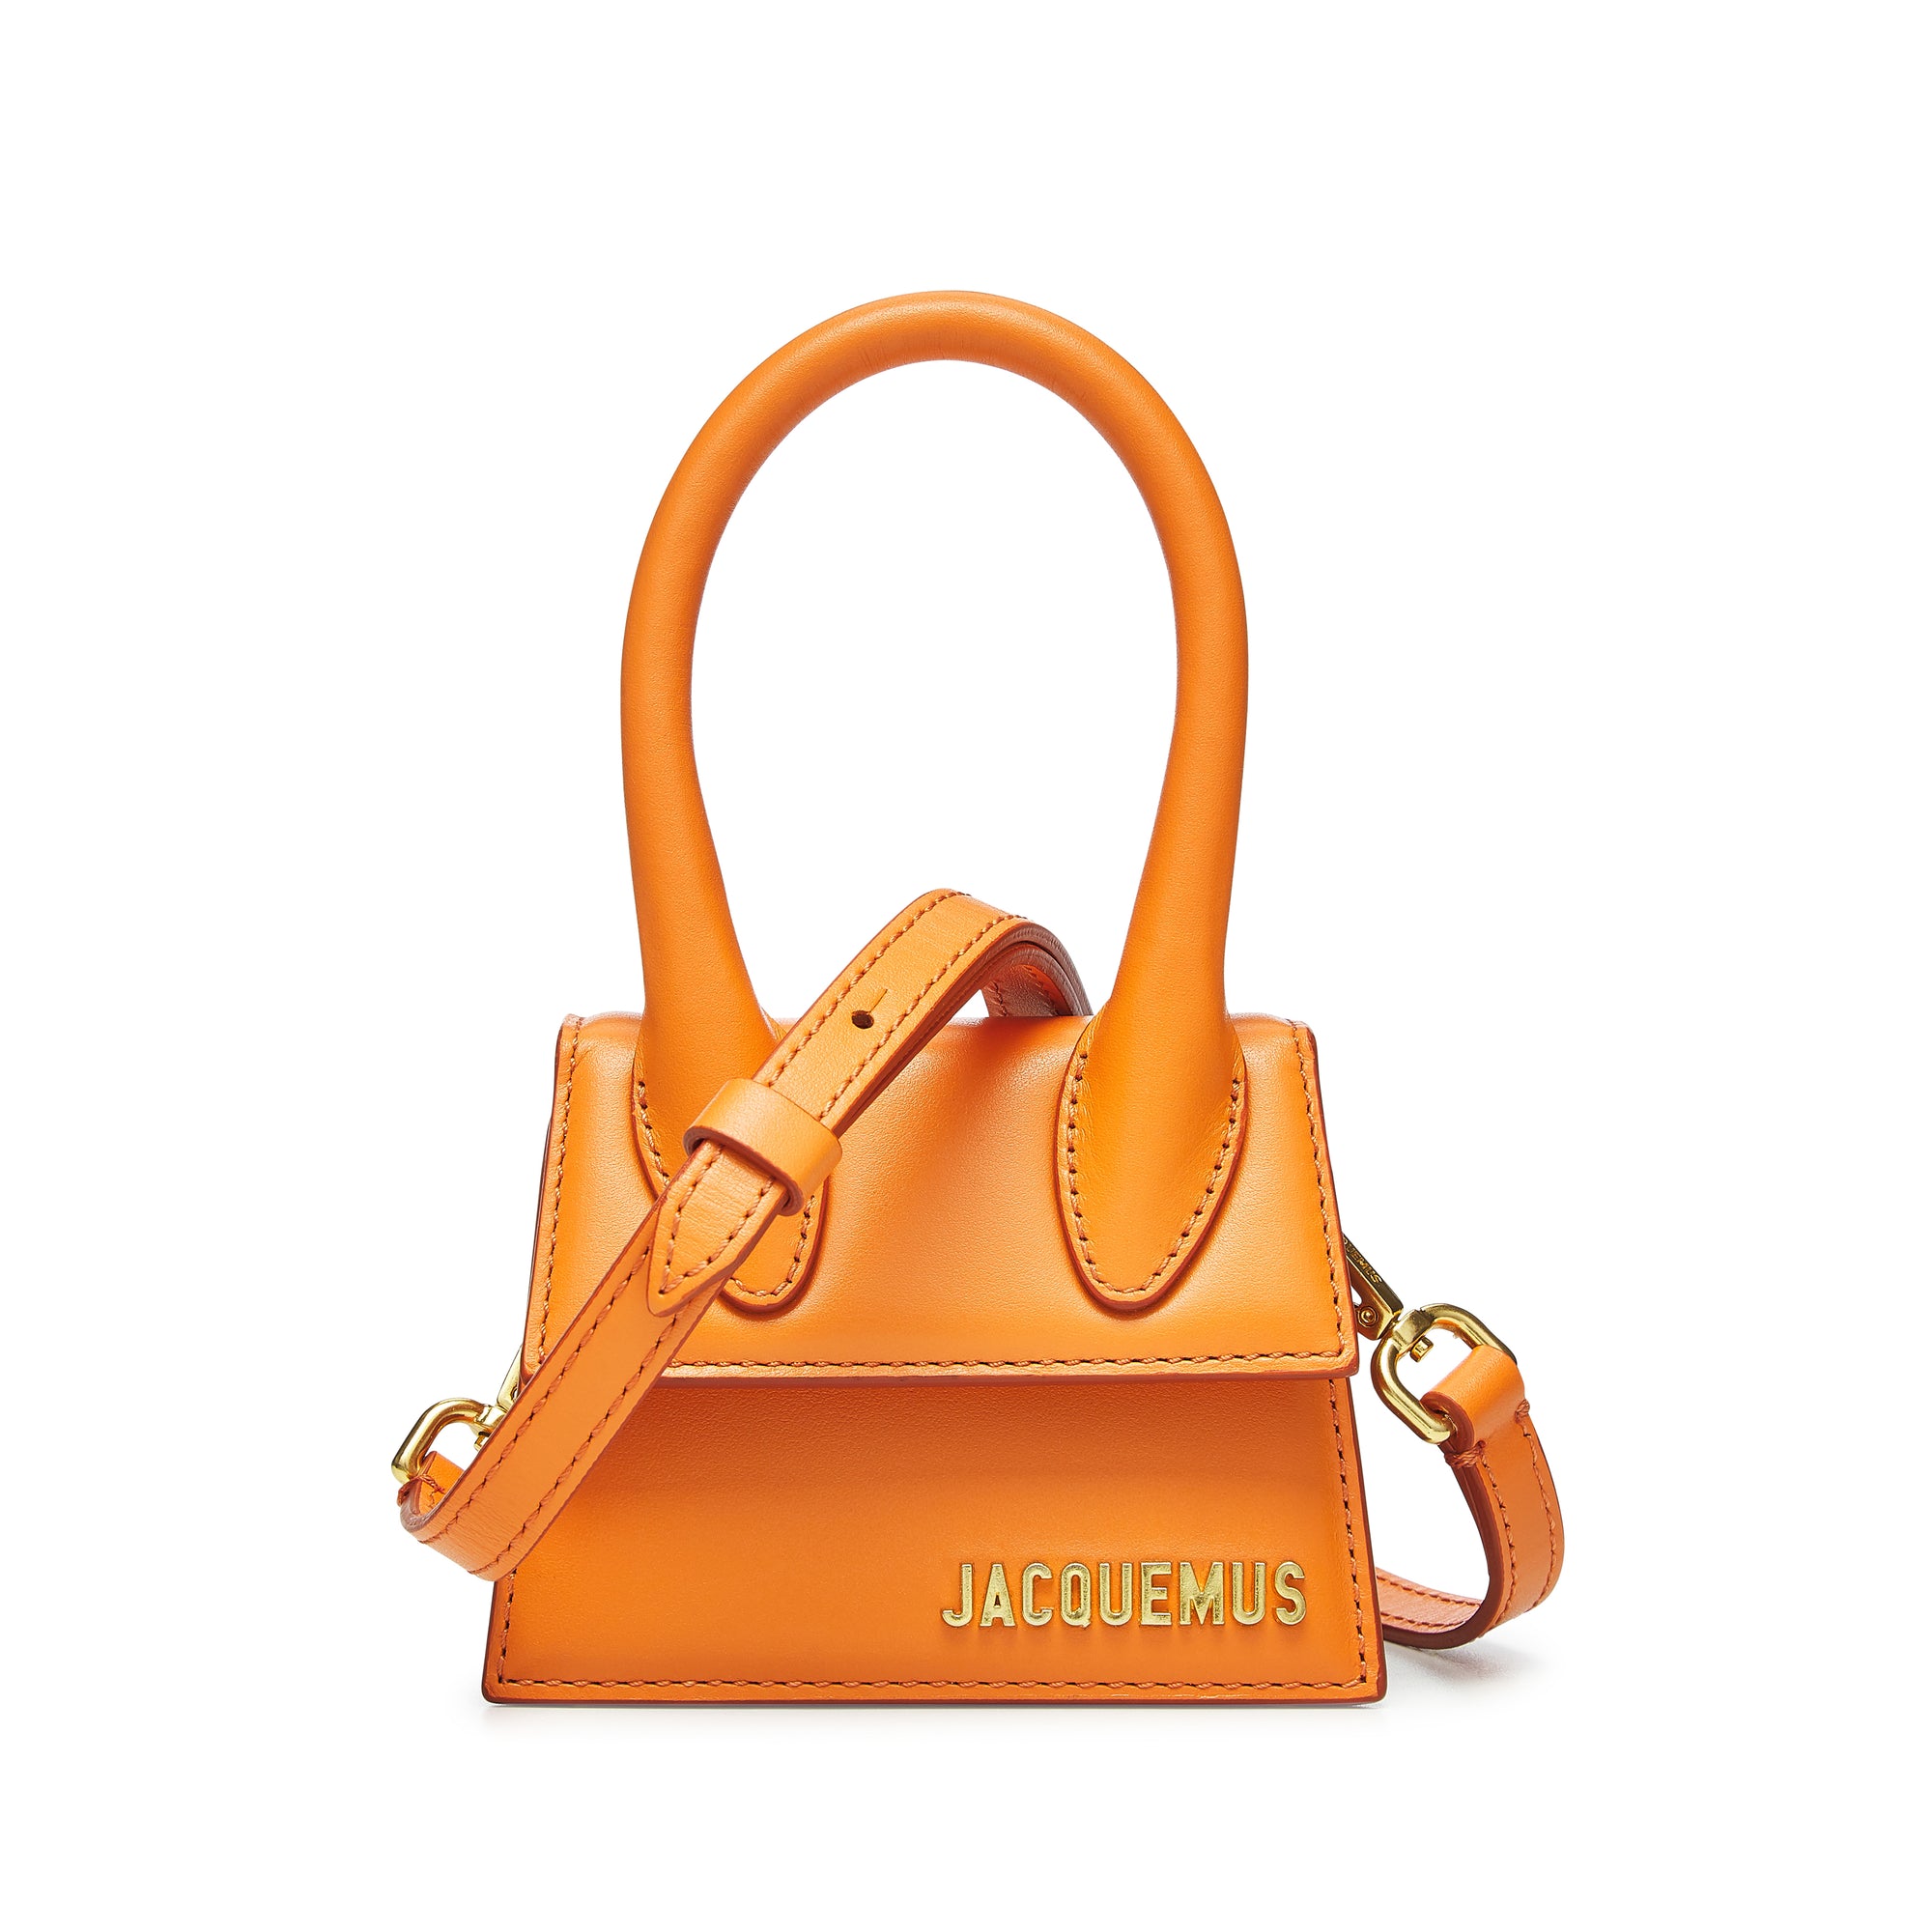 Jacquemus - Le Chiquito - Orange